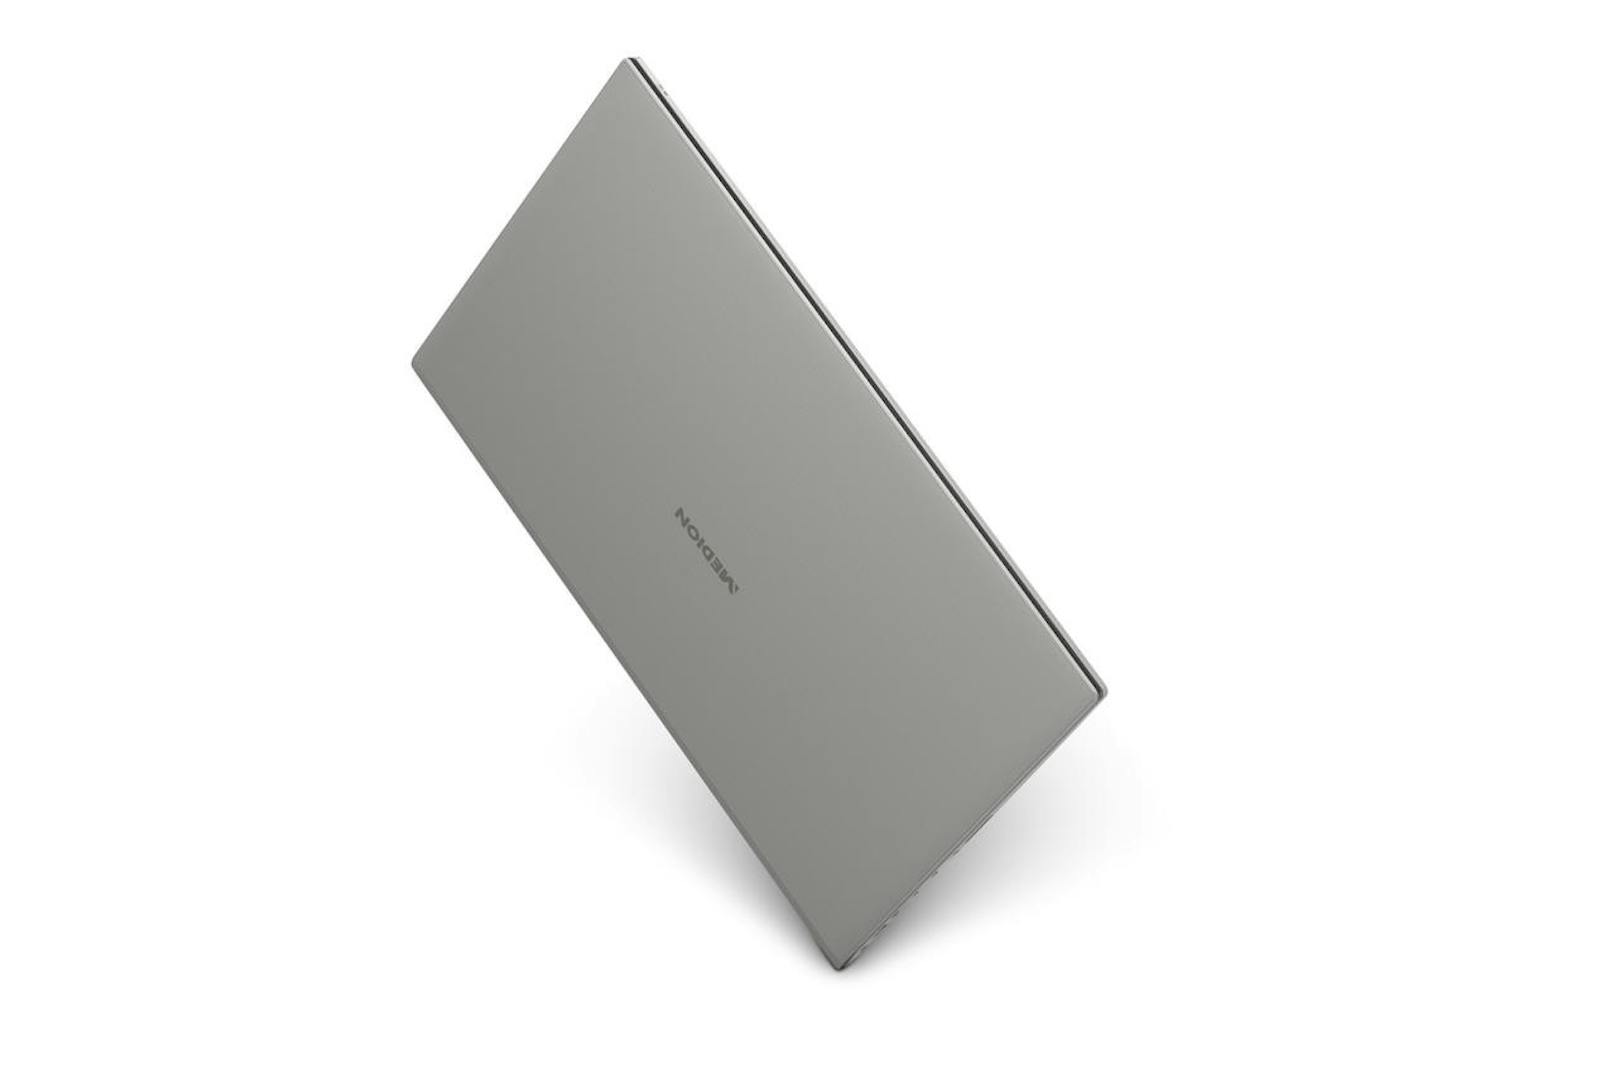 Mit dem Medion Akoya S6625 ist ab dem 8. Dezember für 799 Euro Aluminium-Notebook in allen Hofer-Filialen erhältlich.